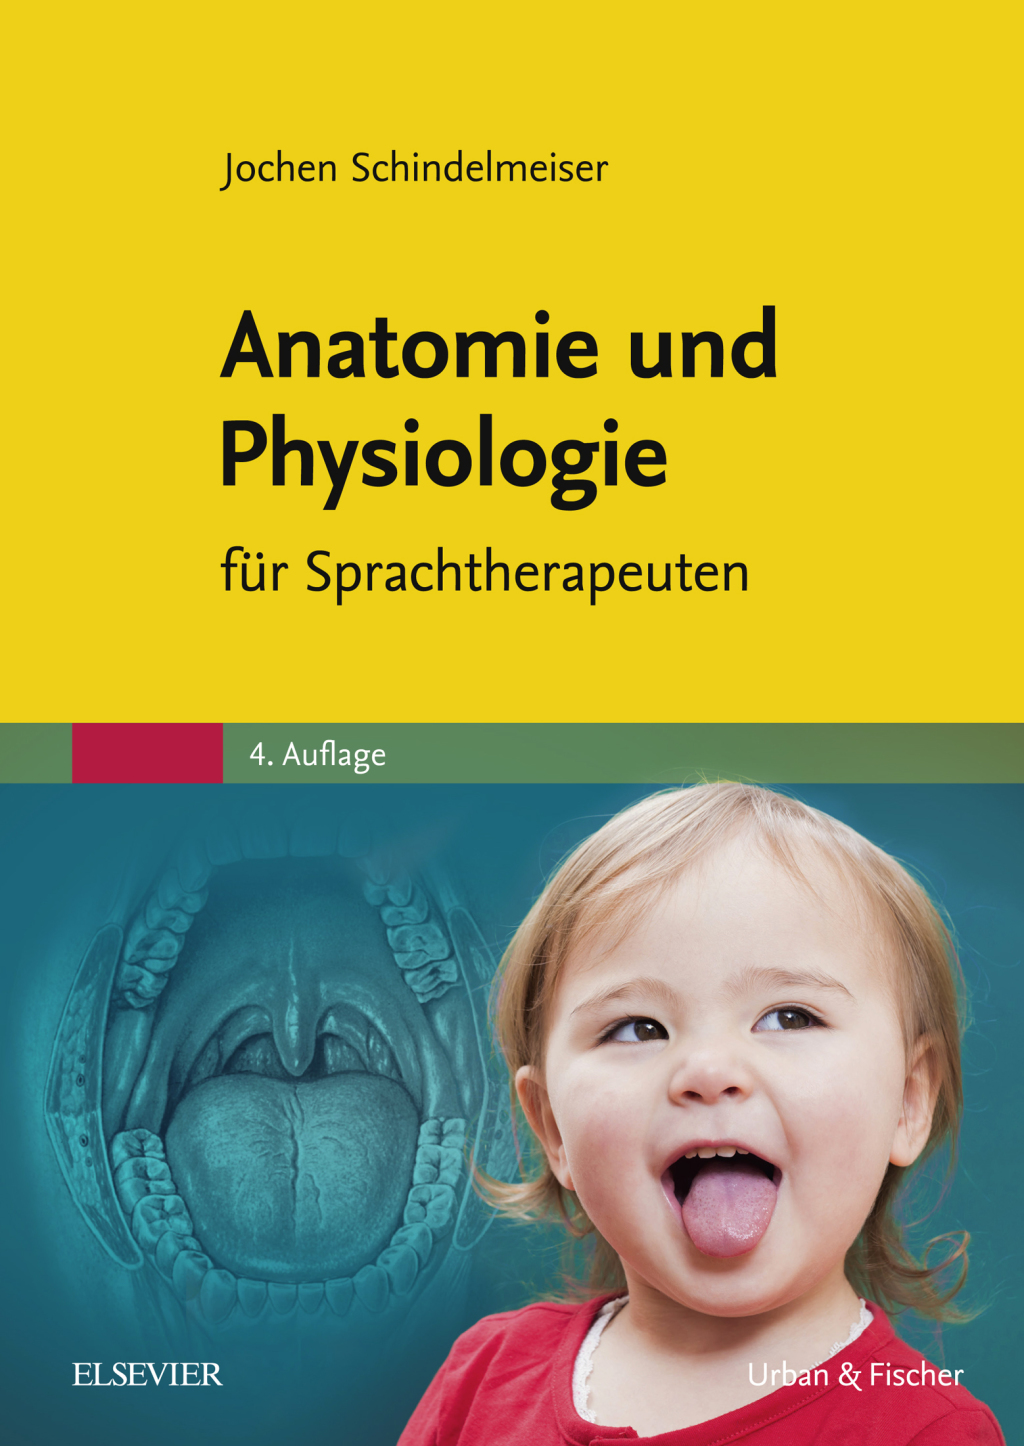 Anatomie und Physiologie (eBook) - Jochen Schindelmeiser